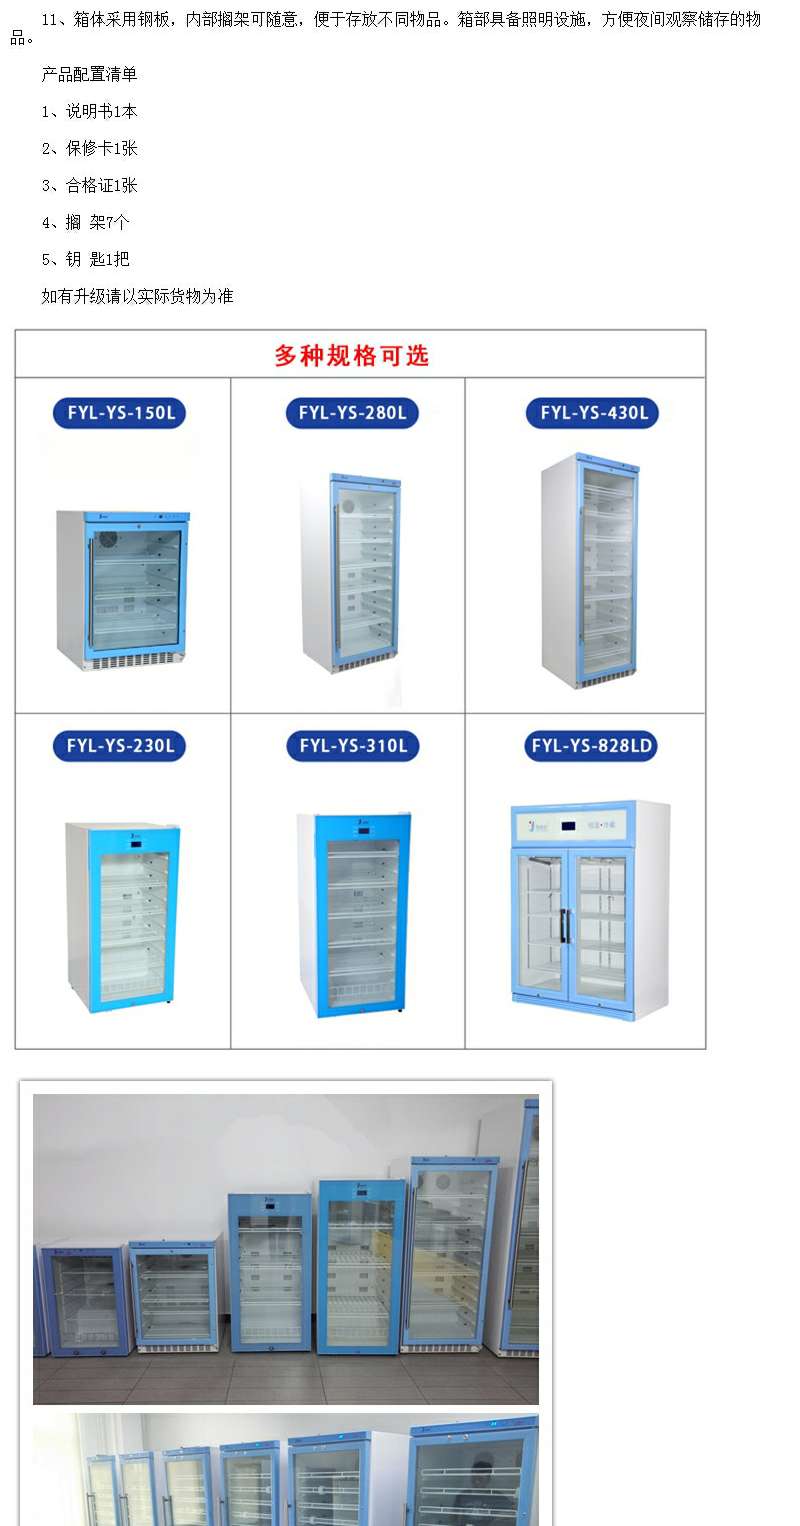 临床标本4度冷藏柜FYL-YS-310L产品结构为立式箱体